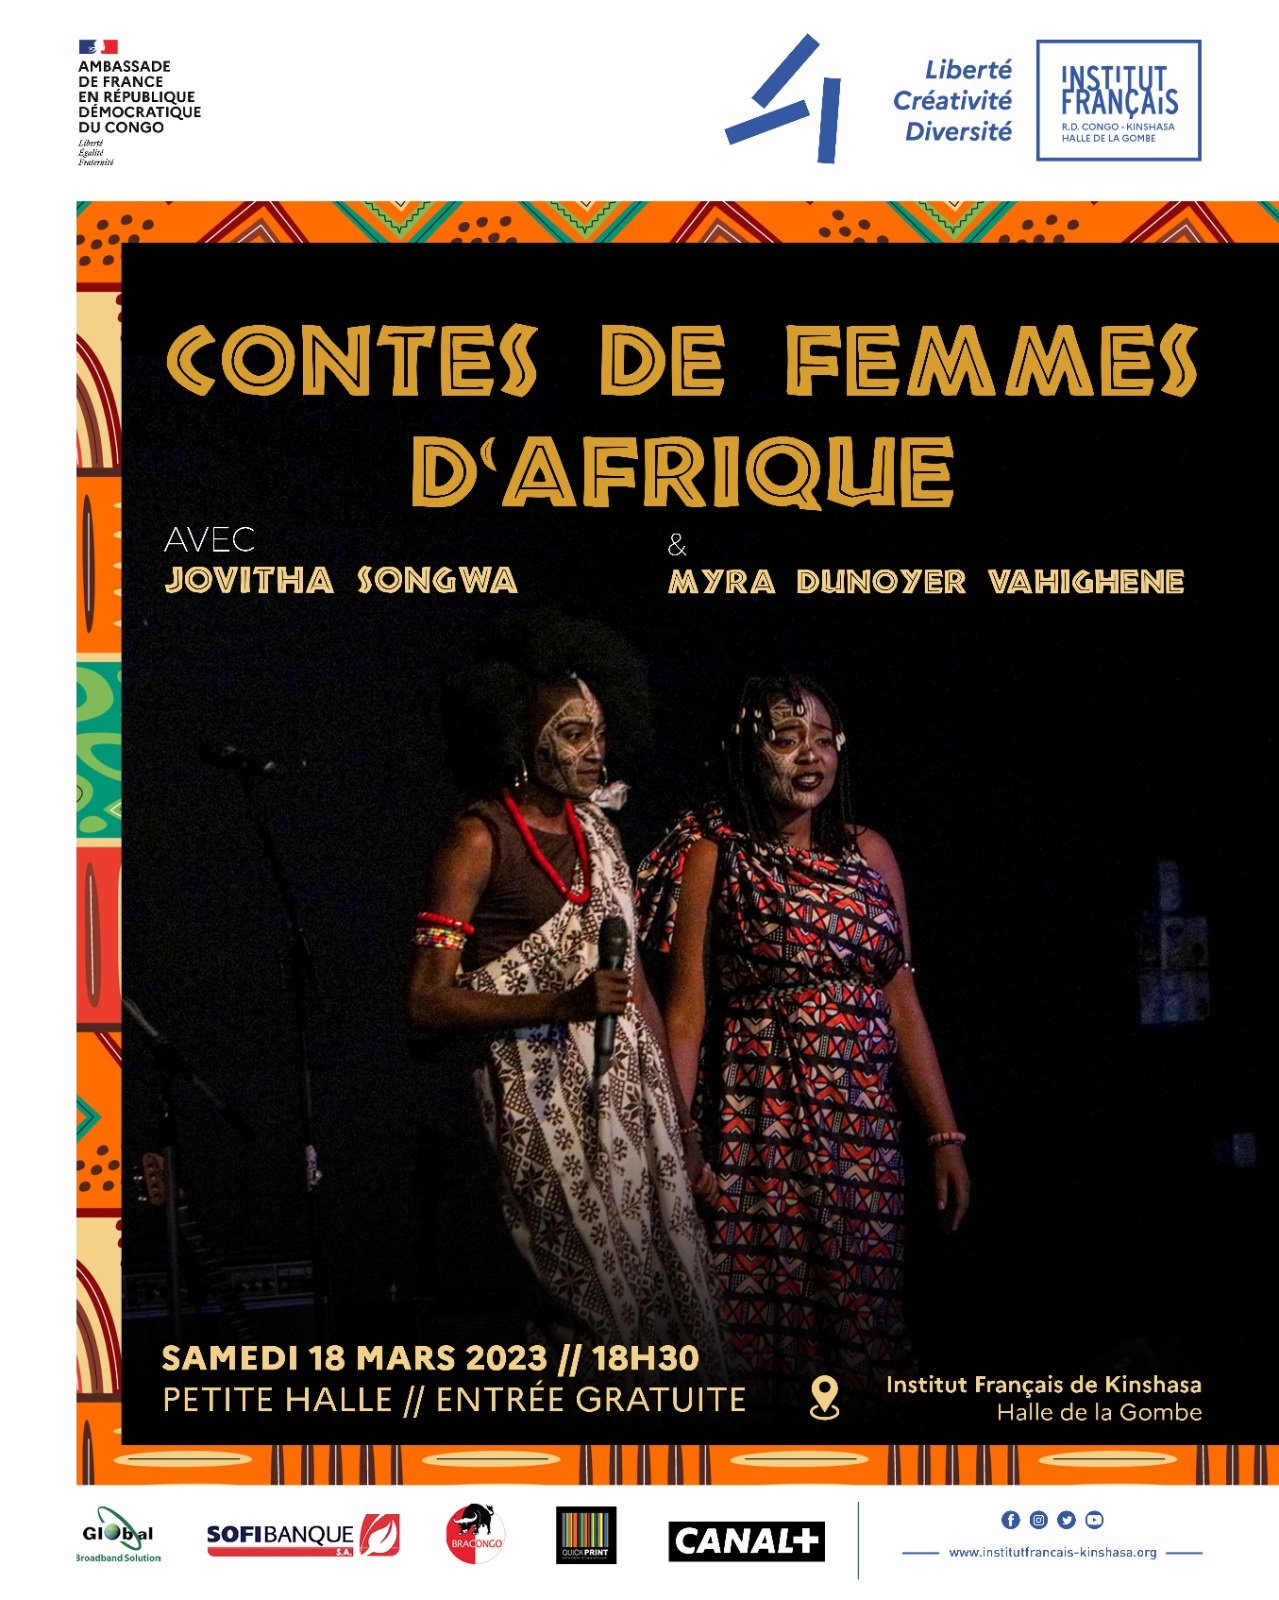  Le duo Myra Dunoyer Vahighene et Jovitha Songwa en spectacle dans les  « Contes de femmes d’Afrique » (DR)